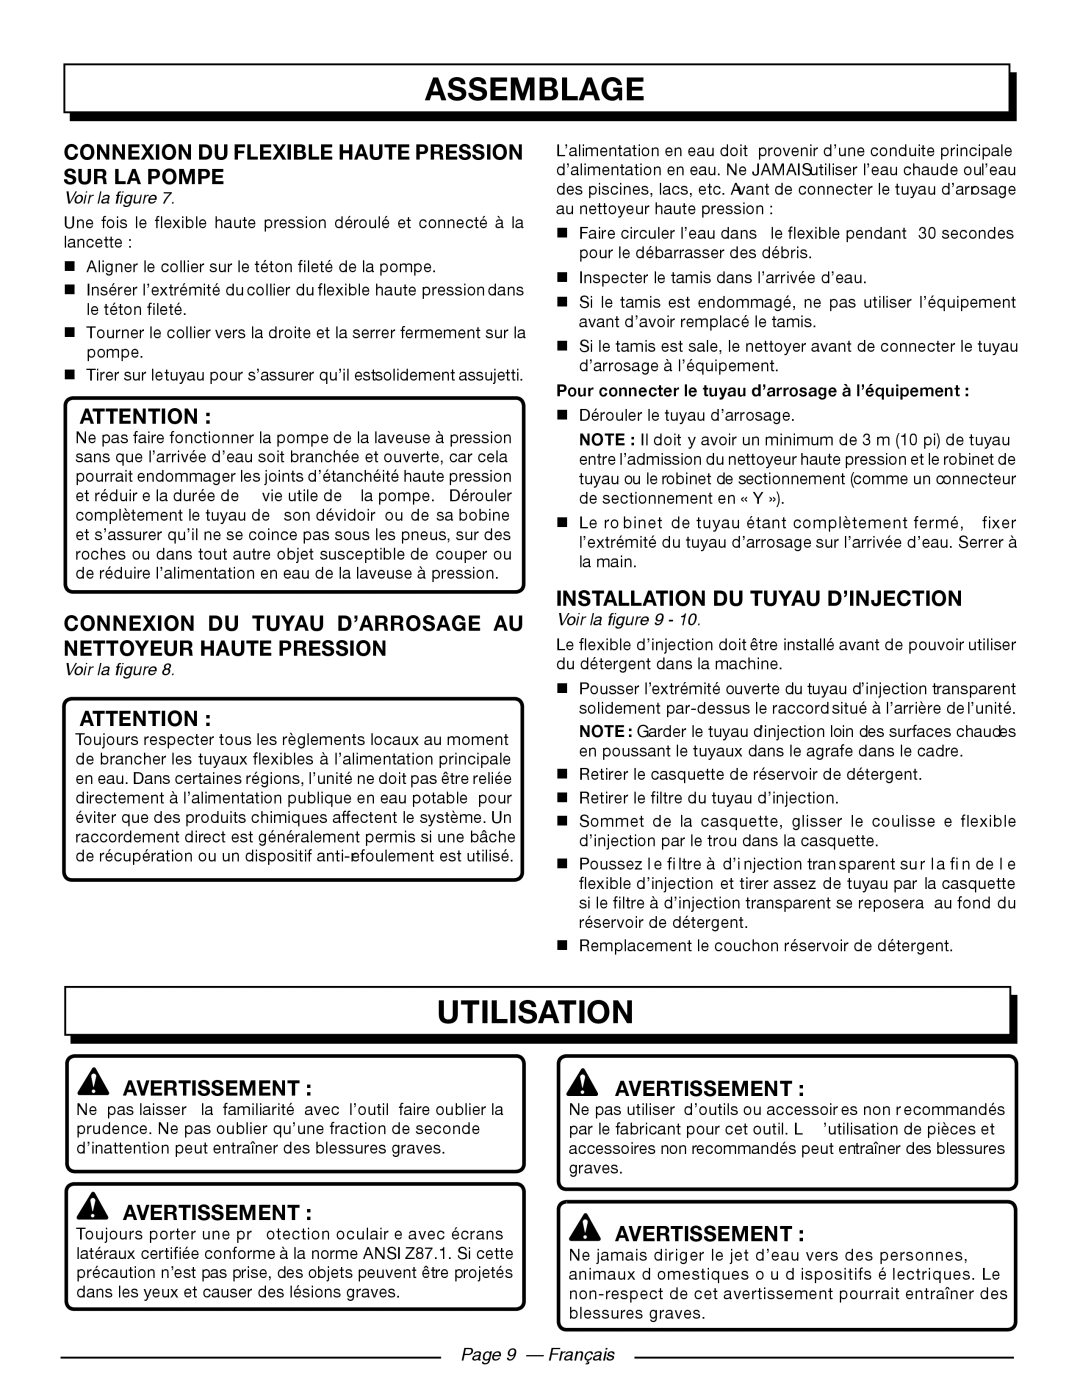 Homelite UT80911 Utilisation, Connexion Du Flexible Haute Pression Sur La Pompe, Installation Du Tuyau D’Injection 